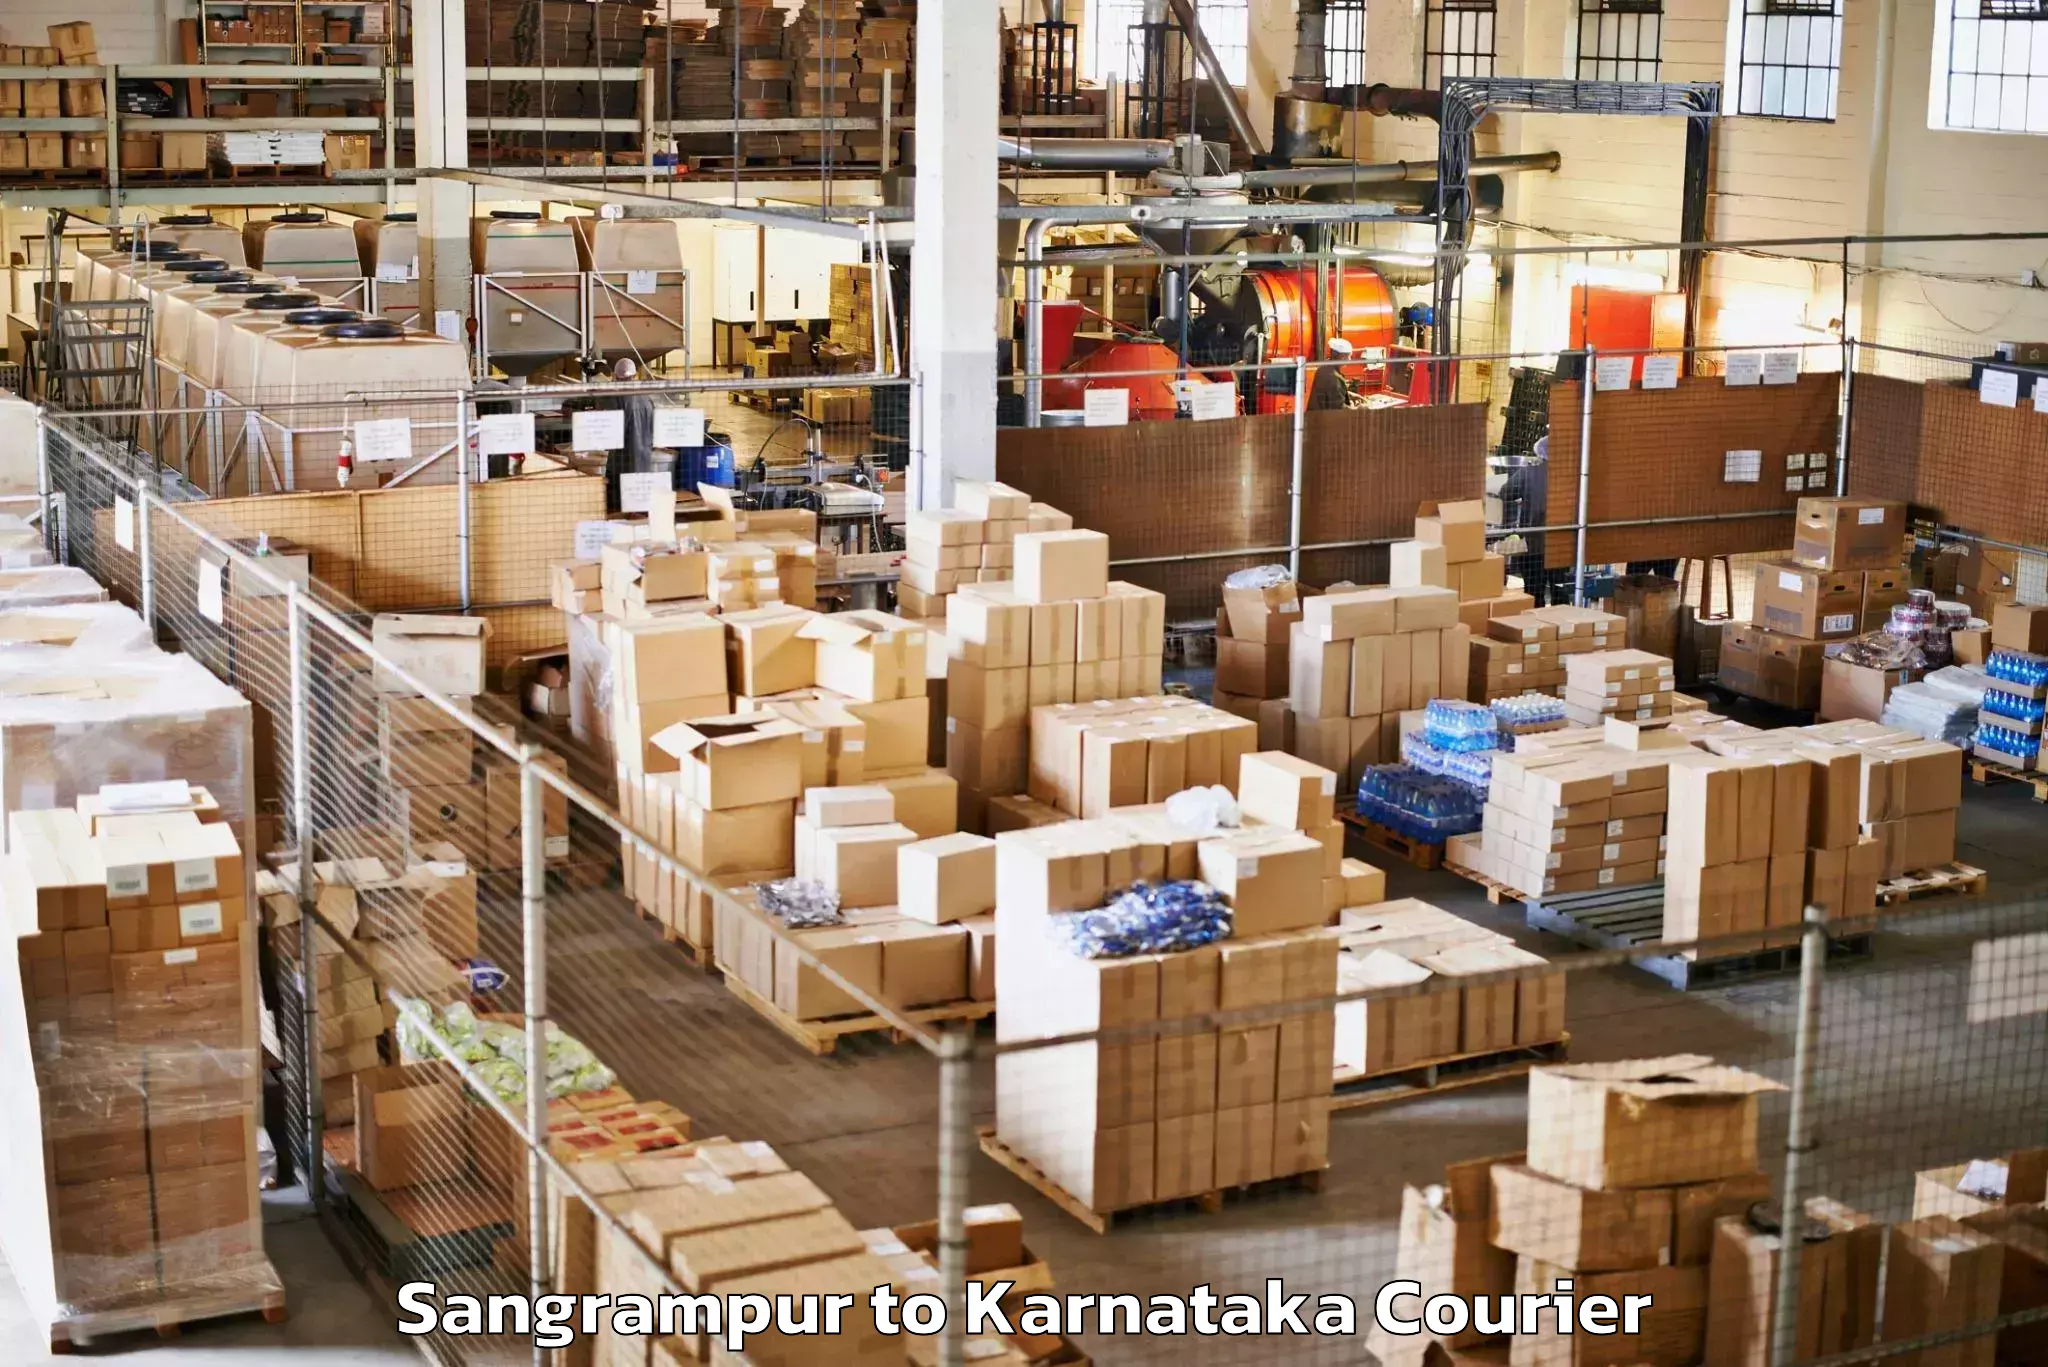 Luggage transport company Sangrampur to Karnataka